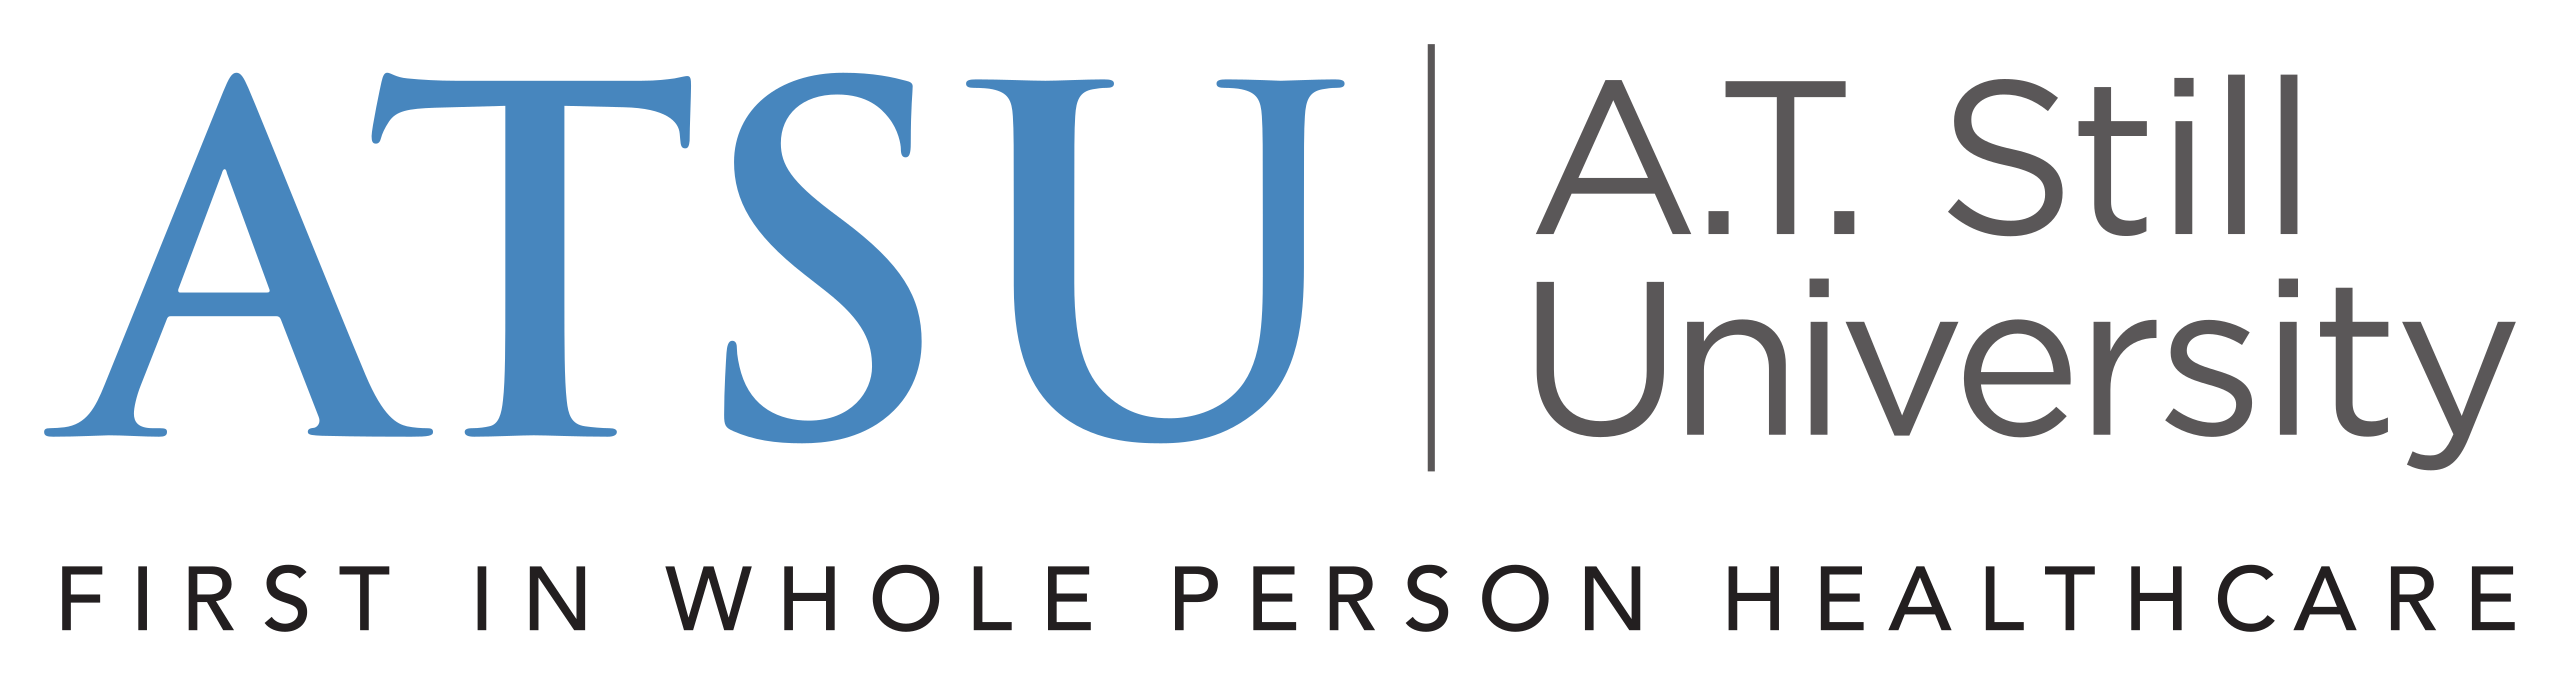 A.T. Still University (ATSU) of Health Sciences Logo